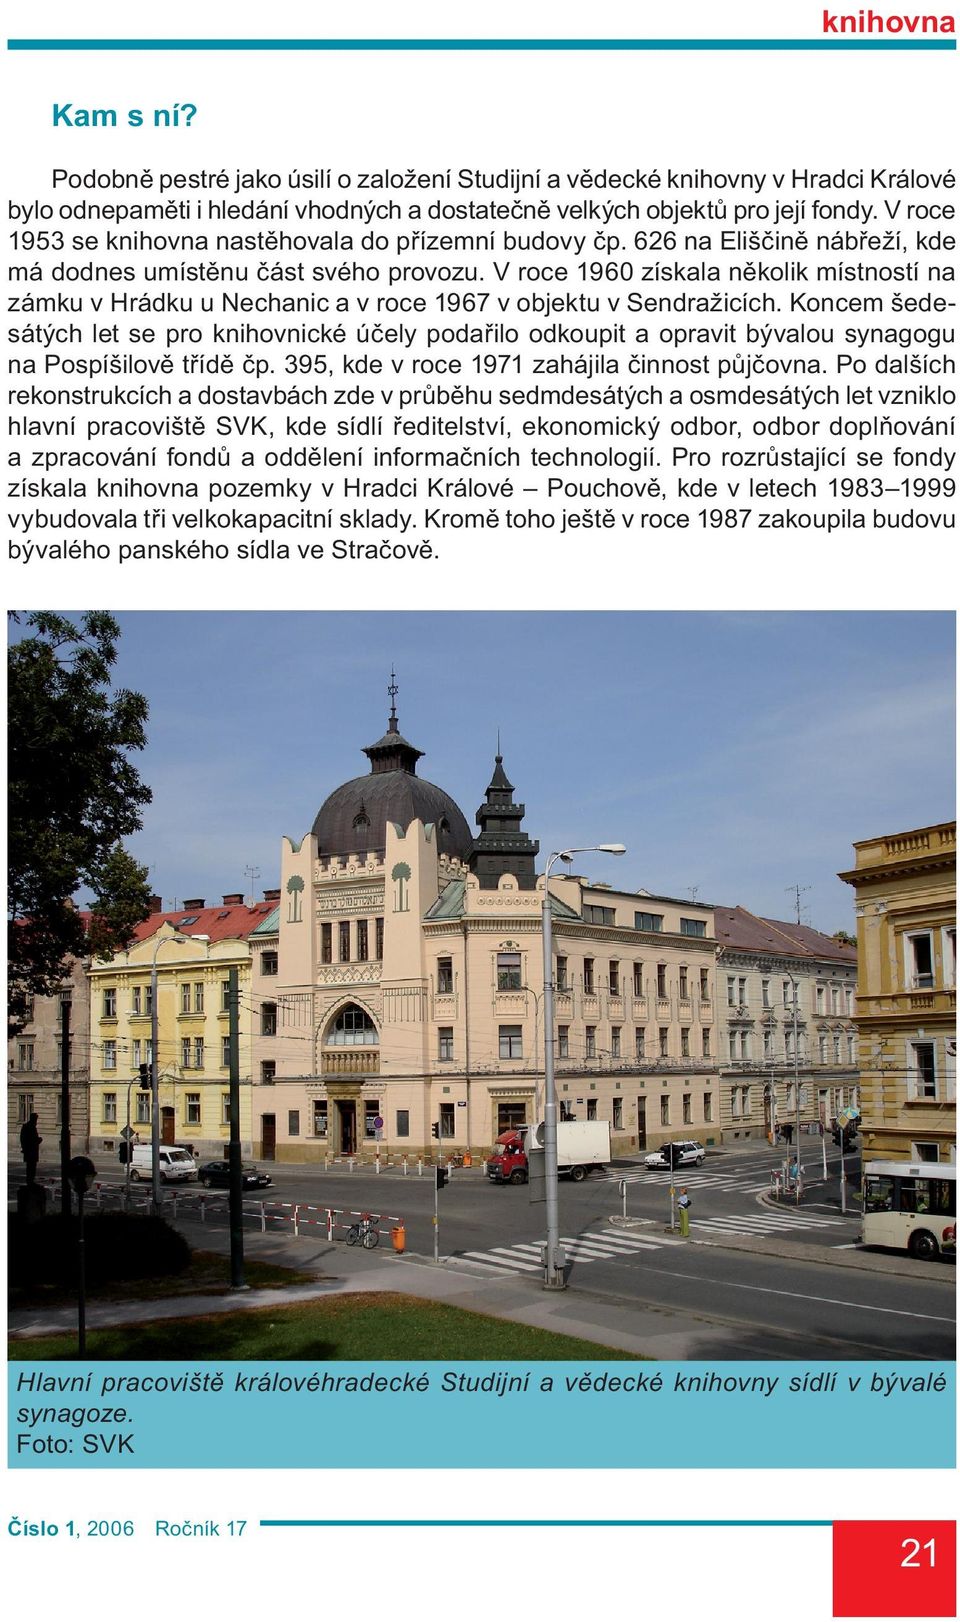 V roce 1960 získala několik místností na zámku v Hrádku u Nechanic a v roce 1967 v objektu v Sendražicích.